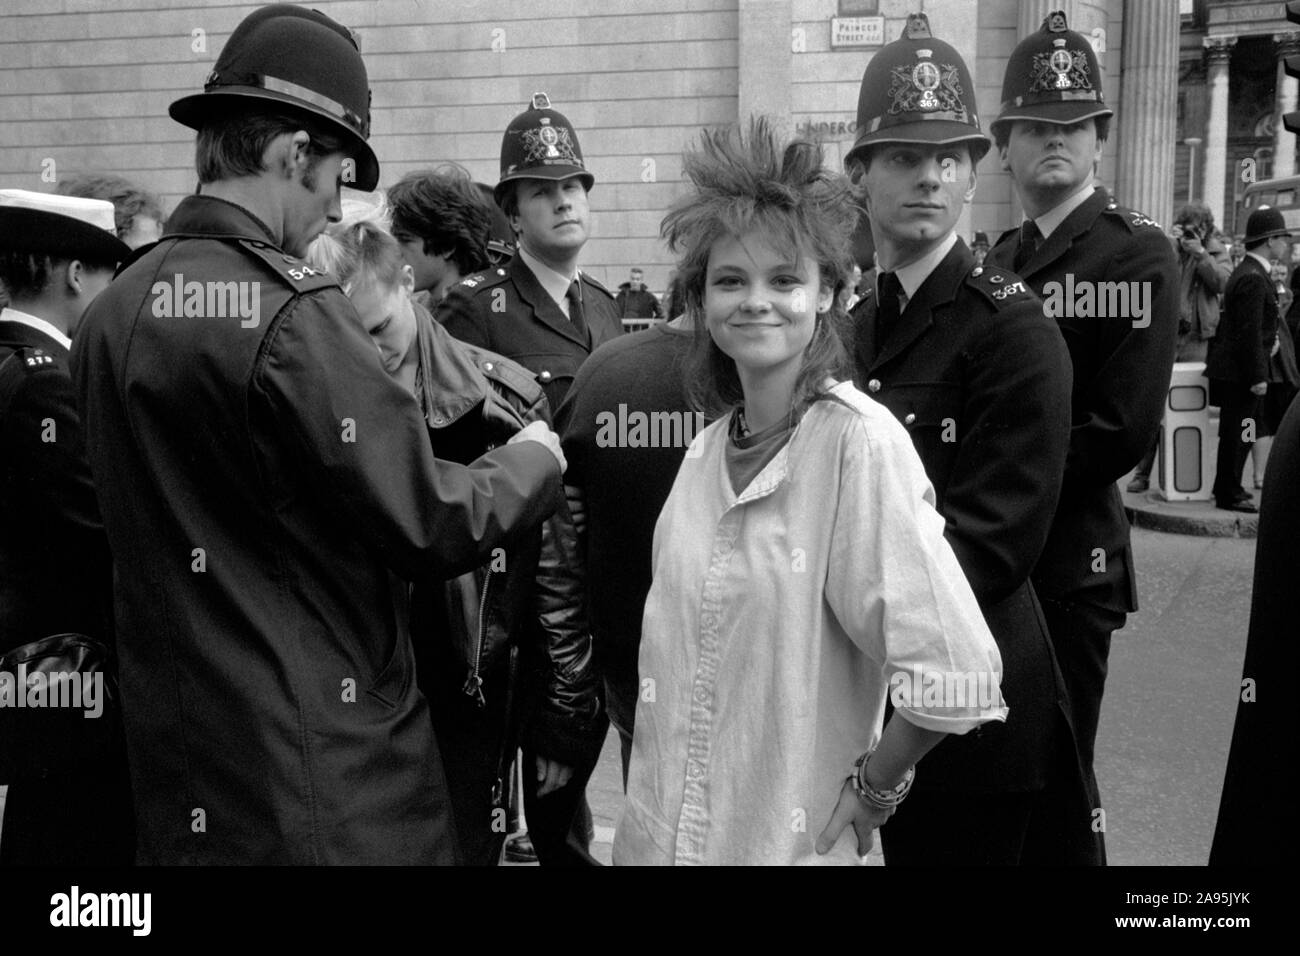 Teen girl Punk des années 80, à l'arrêt de la ville de Londres Royaume-uni 27 septembre 1984 démonstration. Protestation contre le capitalisme anti banquiers 80s en Angleterre. La réalisation d'une police d'arrêter et de recherche sur les jeunes. Girl Friend posing. HOMER SYKES Banque D'Images